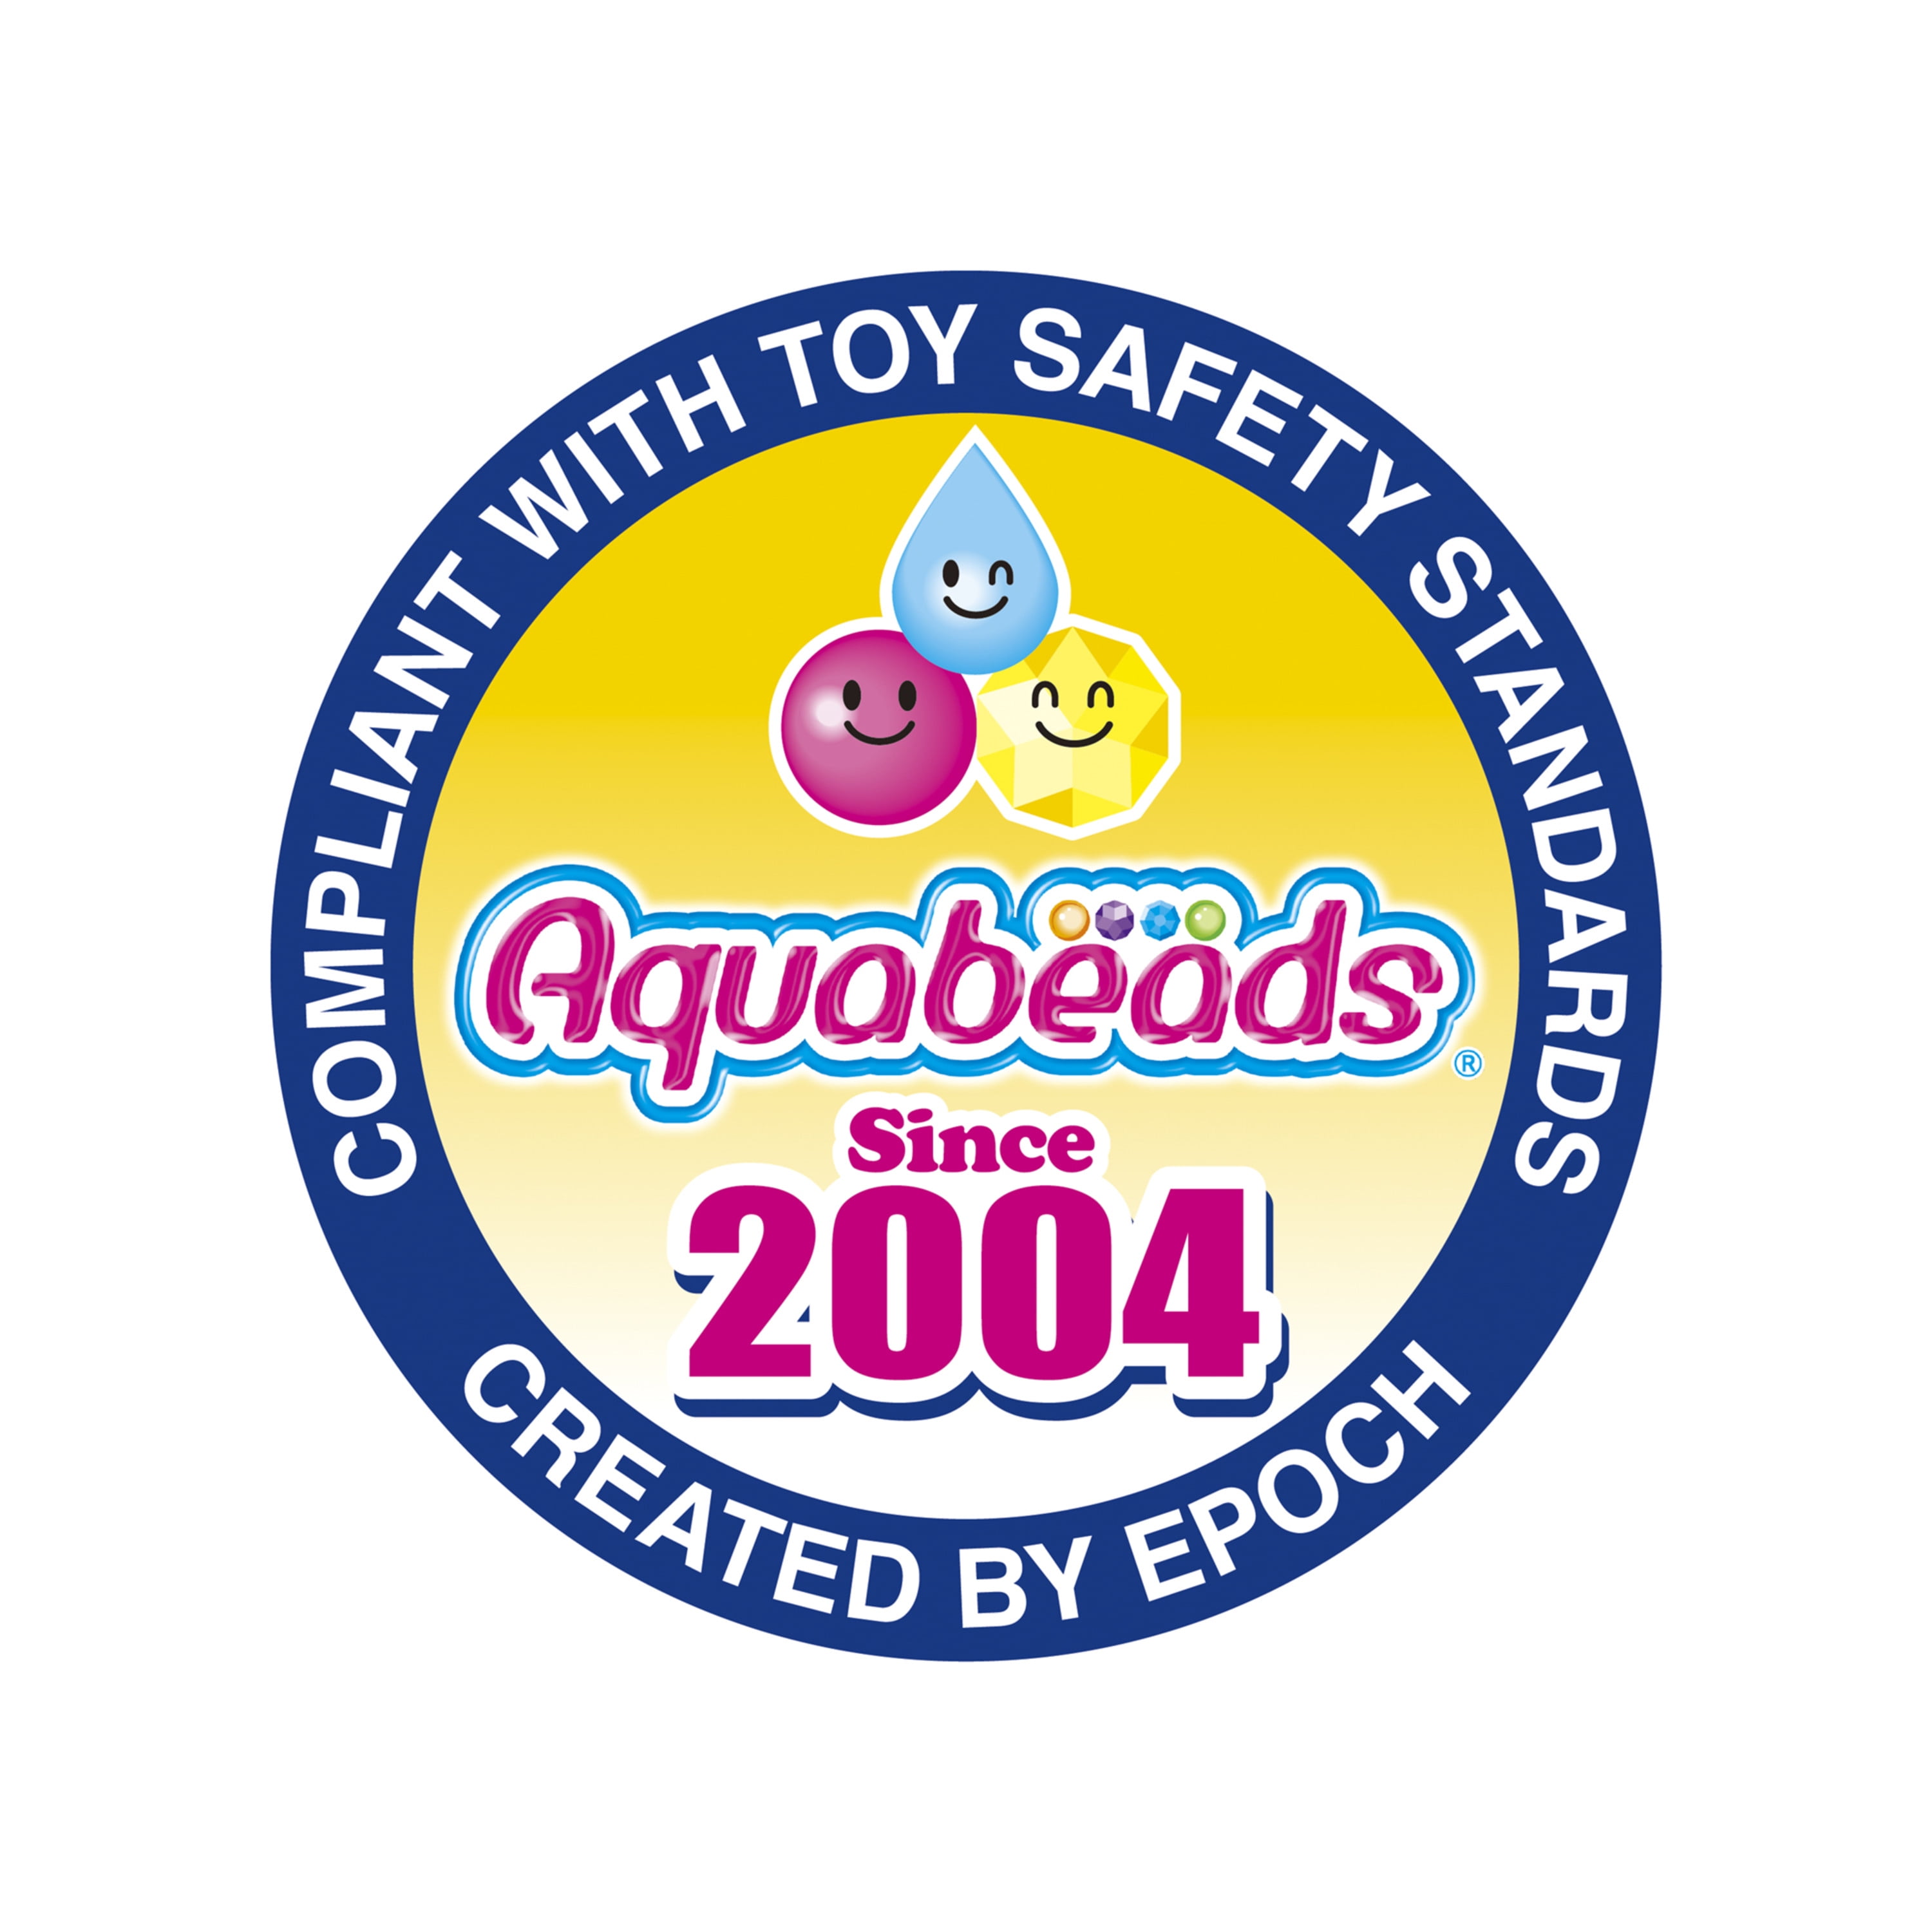 Aqua Beads Princess Tiara Set - Toys & Co. - Epoch Everlasting Play